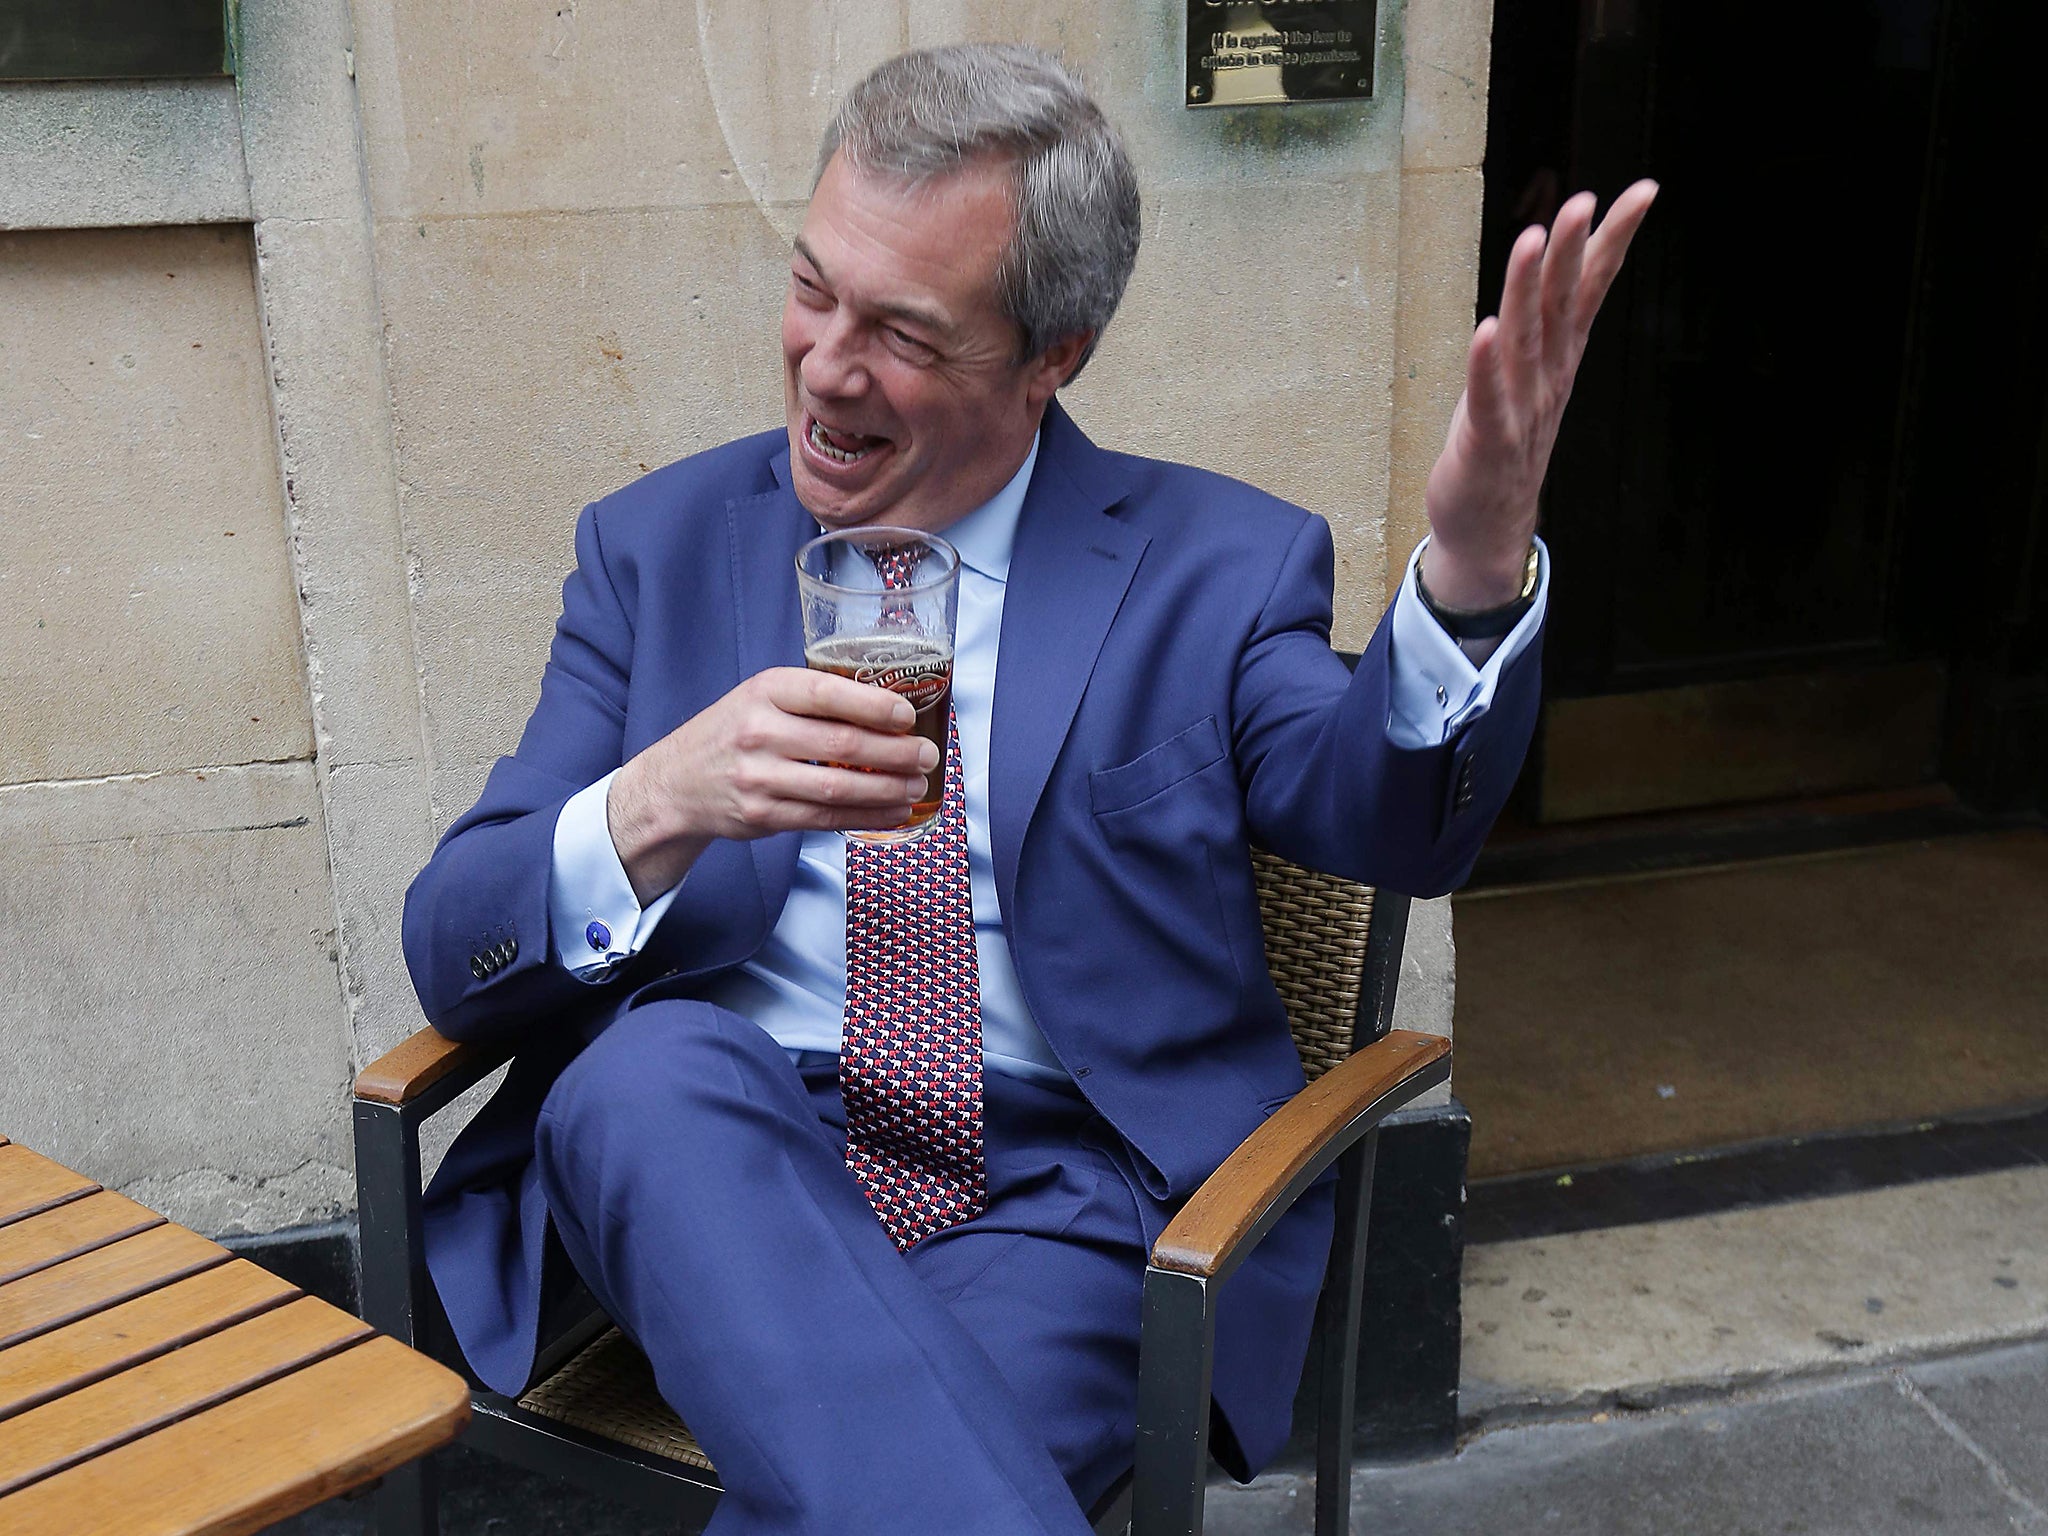 Former Ukip leader Nigel Farage celebrates the triggering of Article 50